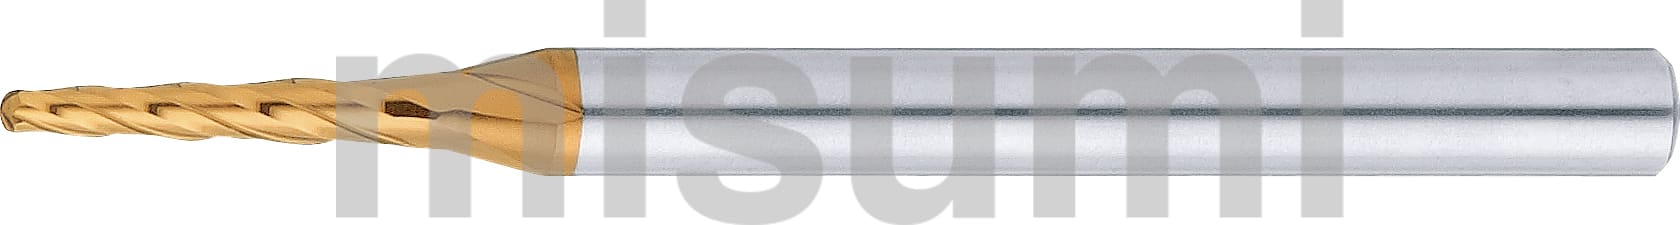 TSCシリーズ超硬テーパボールエンドミル 4枚刃/ロングタイプ